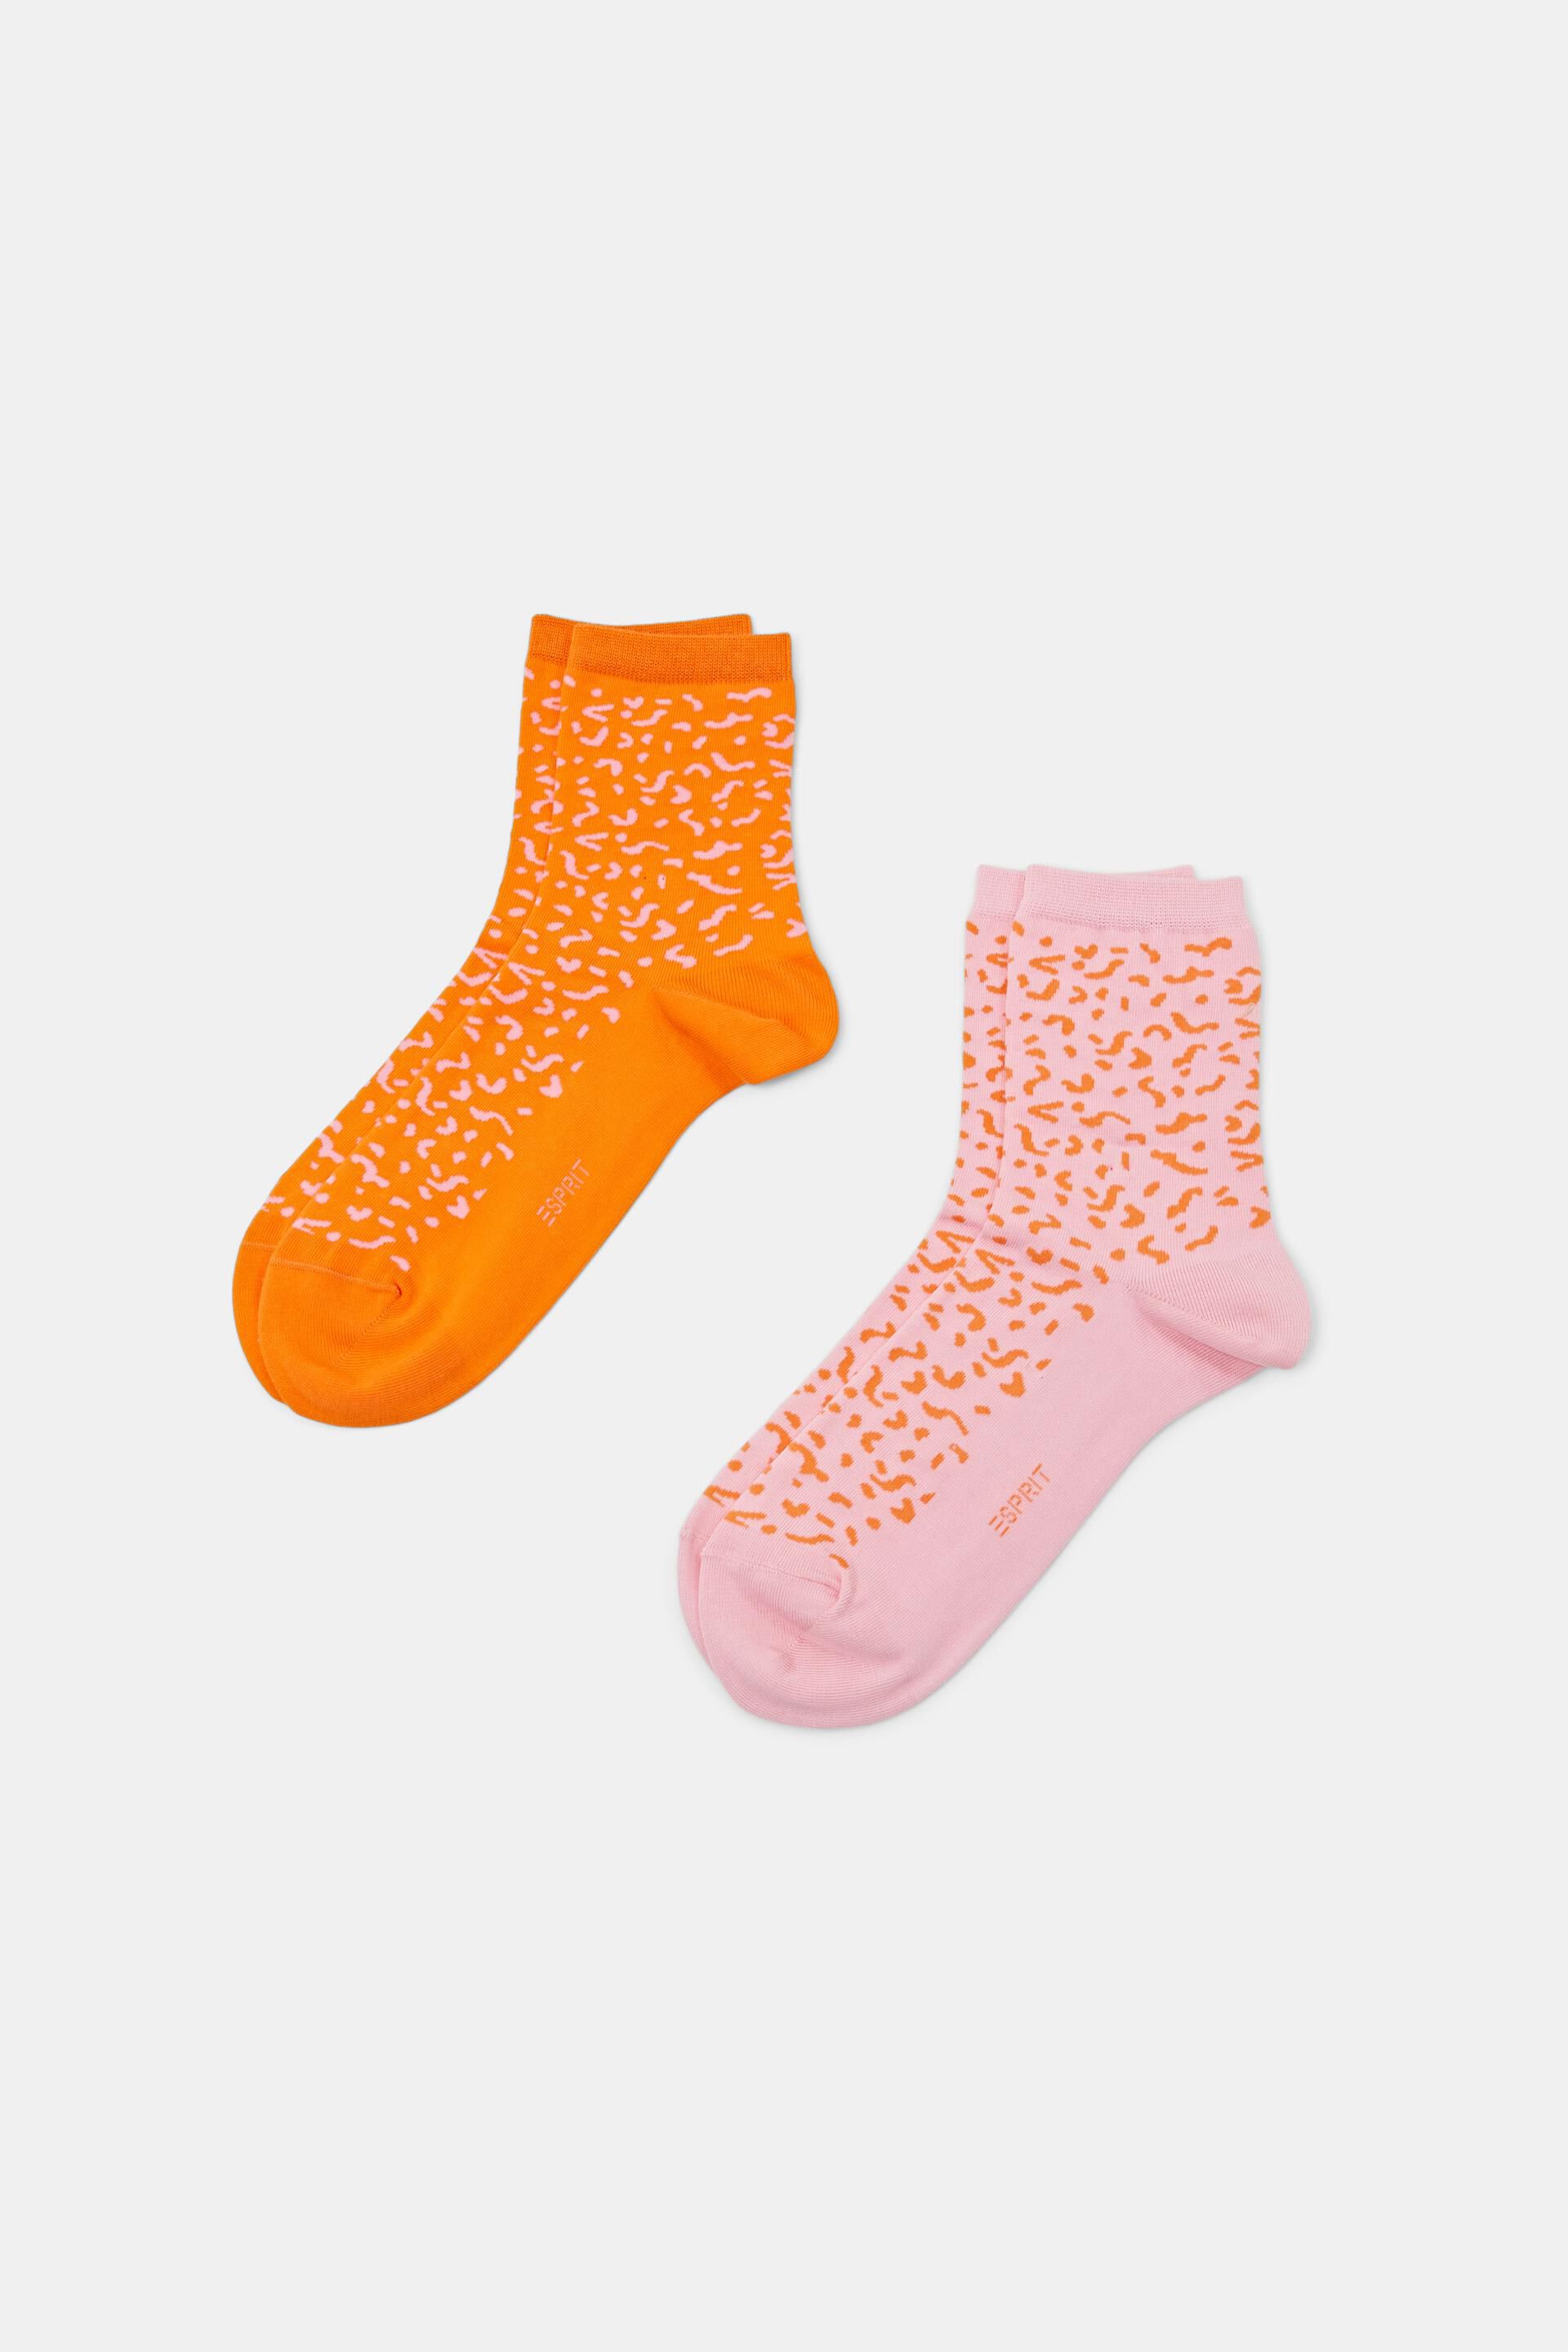 Diversen 2 paar katoenen sokken met print